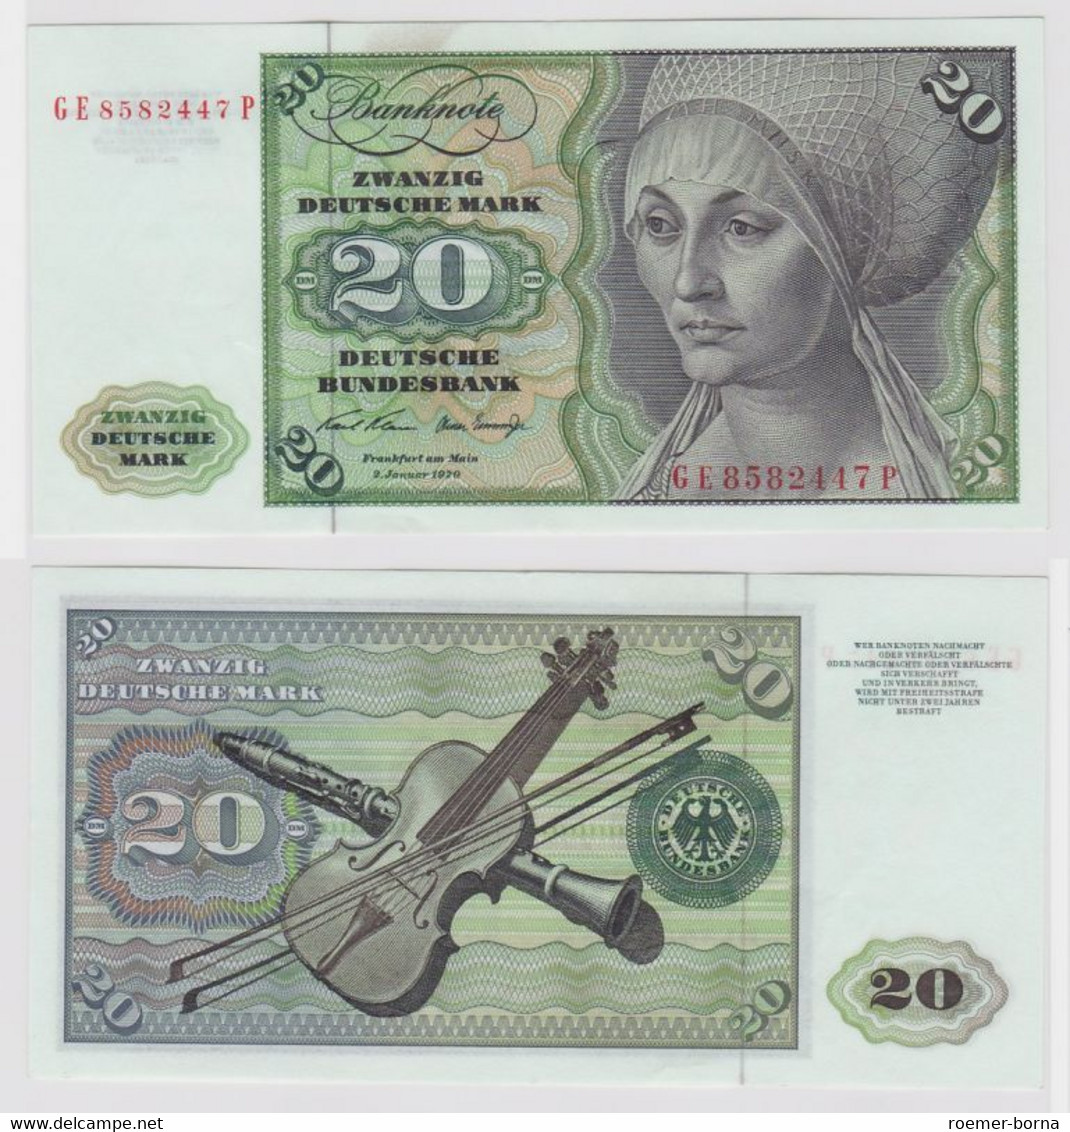 T147949 Banknote 20 DM Deutsche Mark Ro. 271b Schein 2.Jan. 1970 KN GE 8582447 P - 20 DM